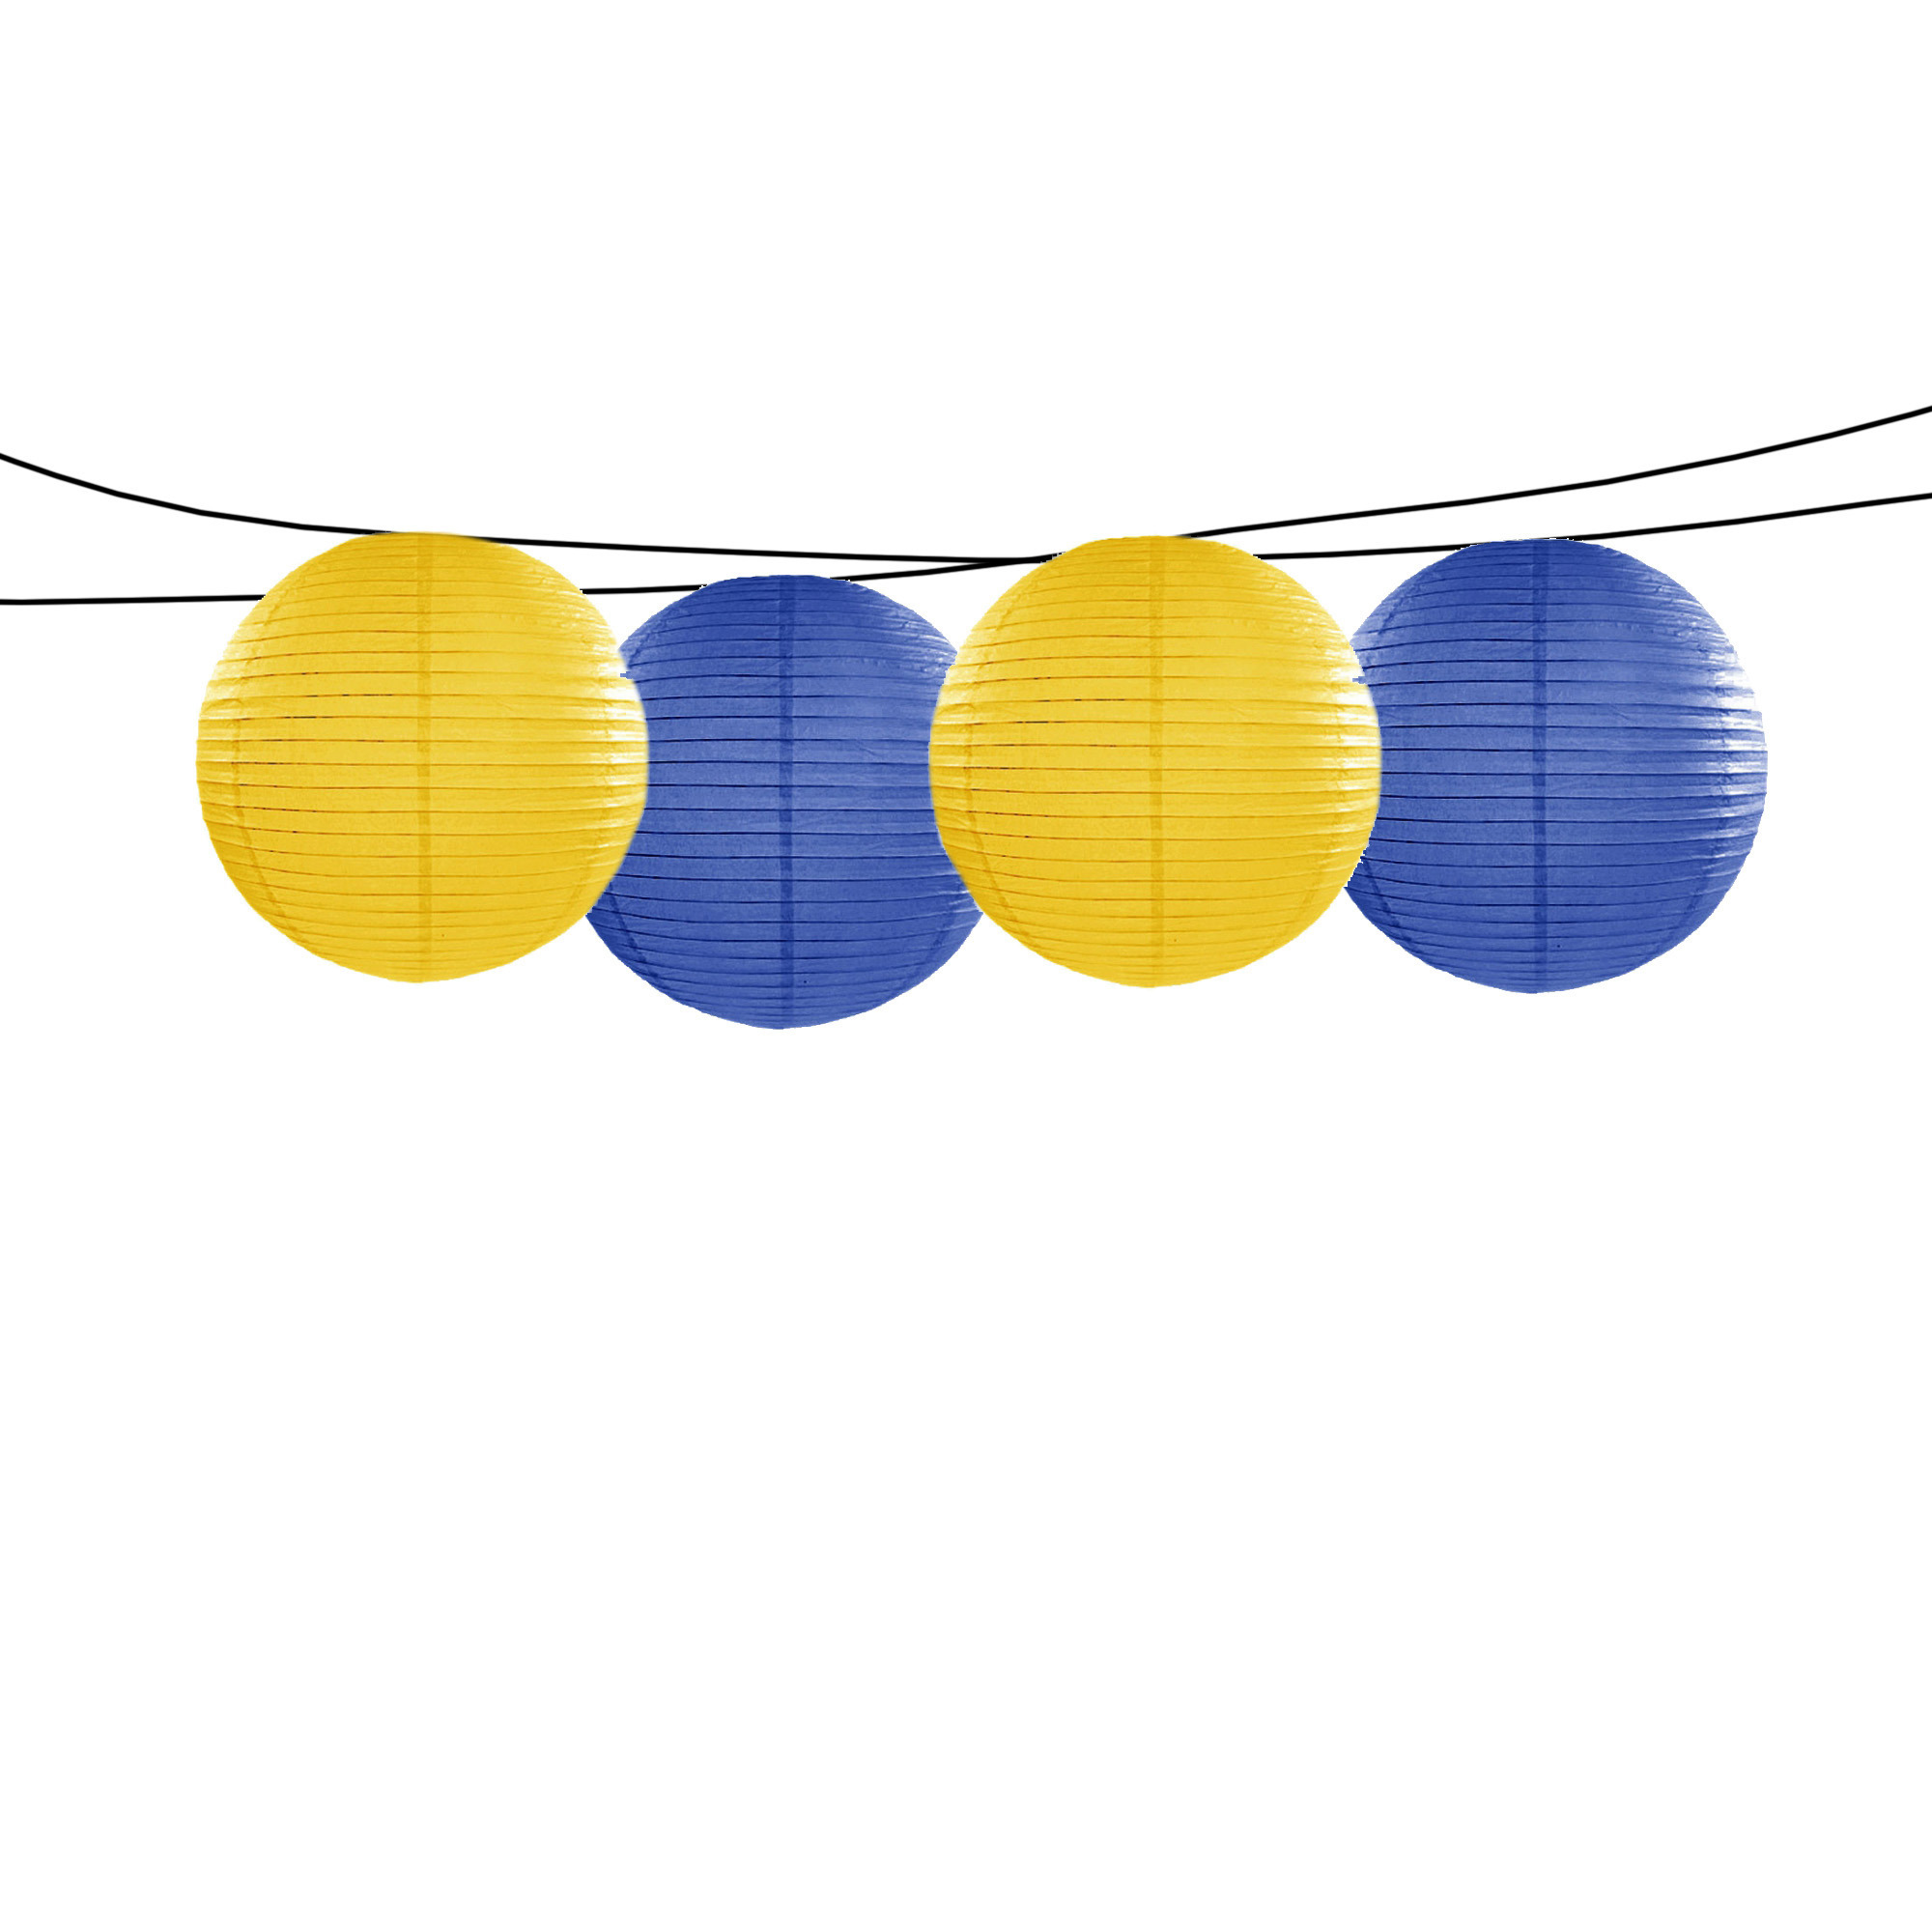 Feest-tuin versiering 4x stuks luxe bol-vorm lampionnen blauw en geel dia 35 cm